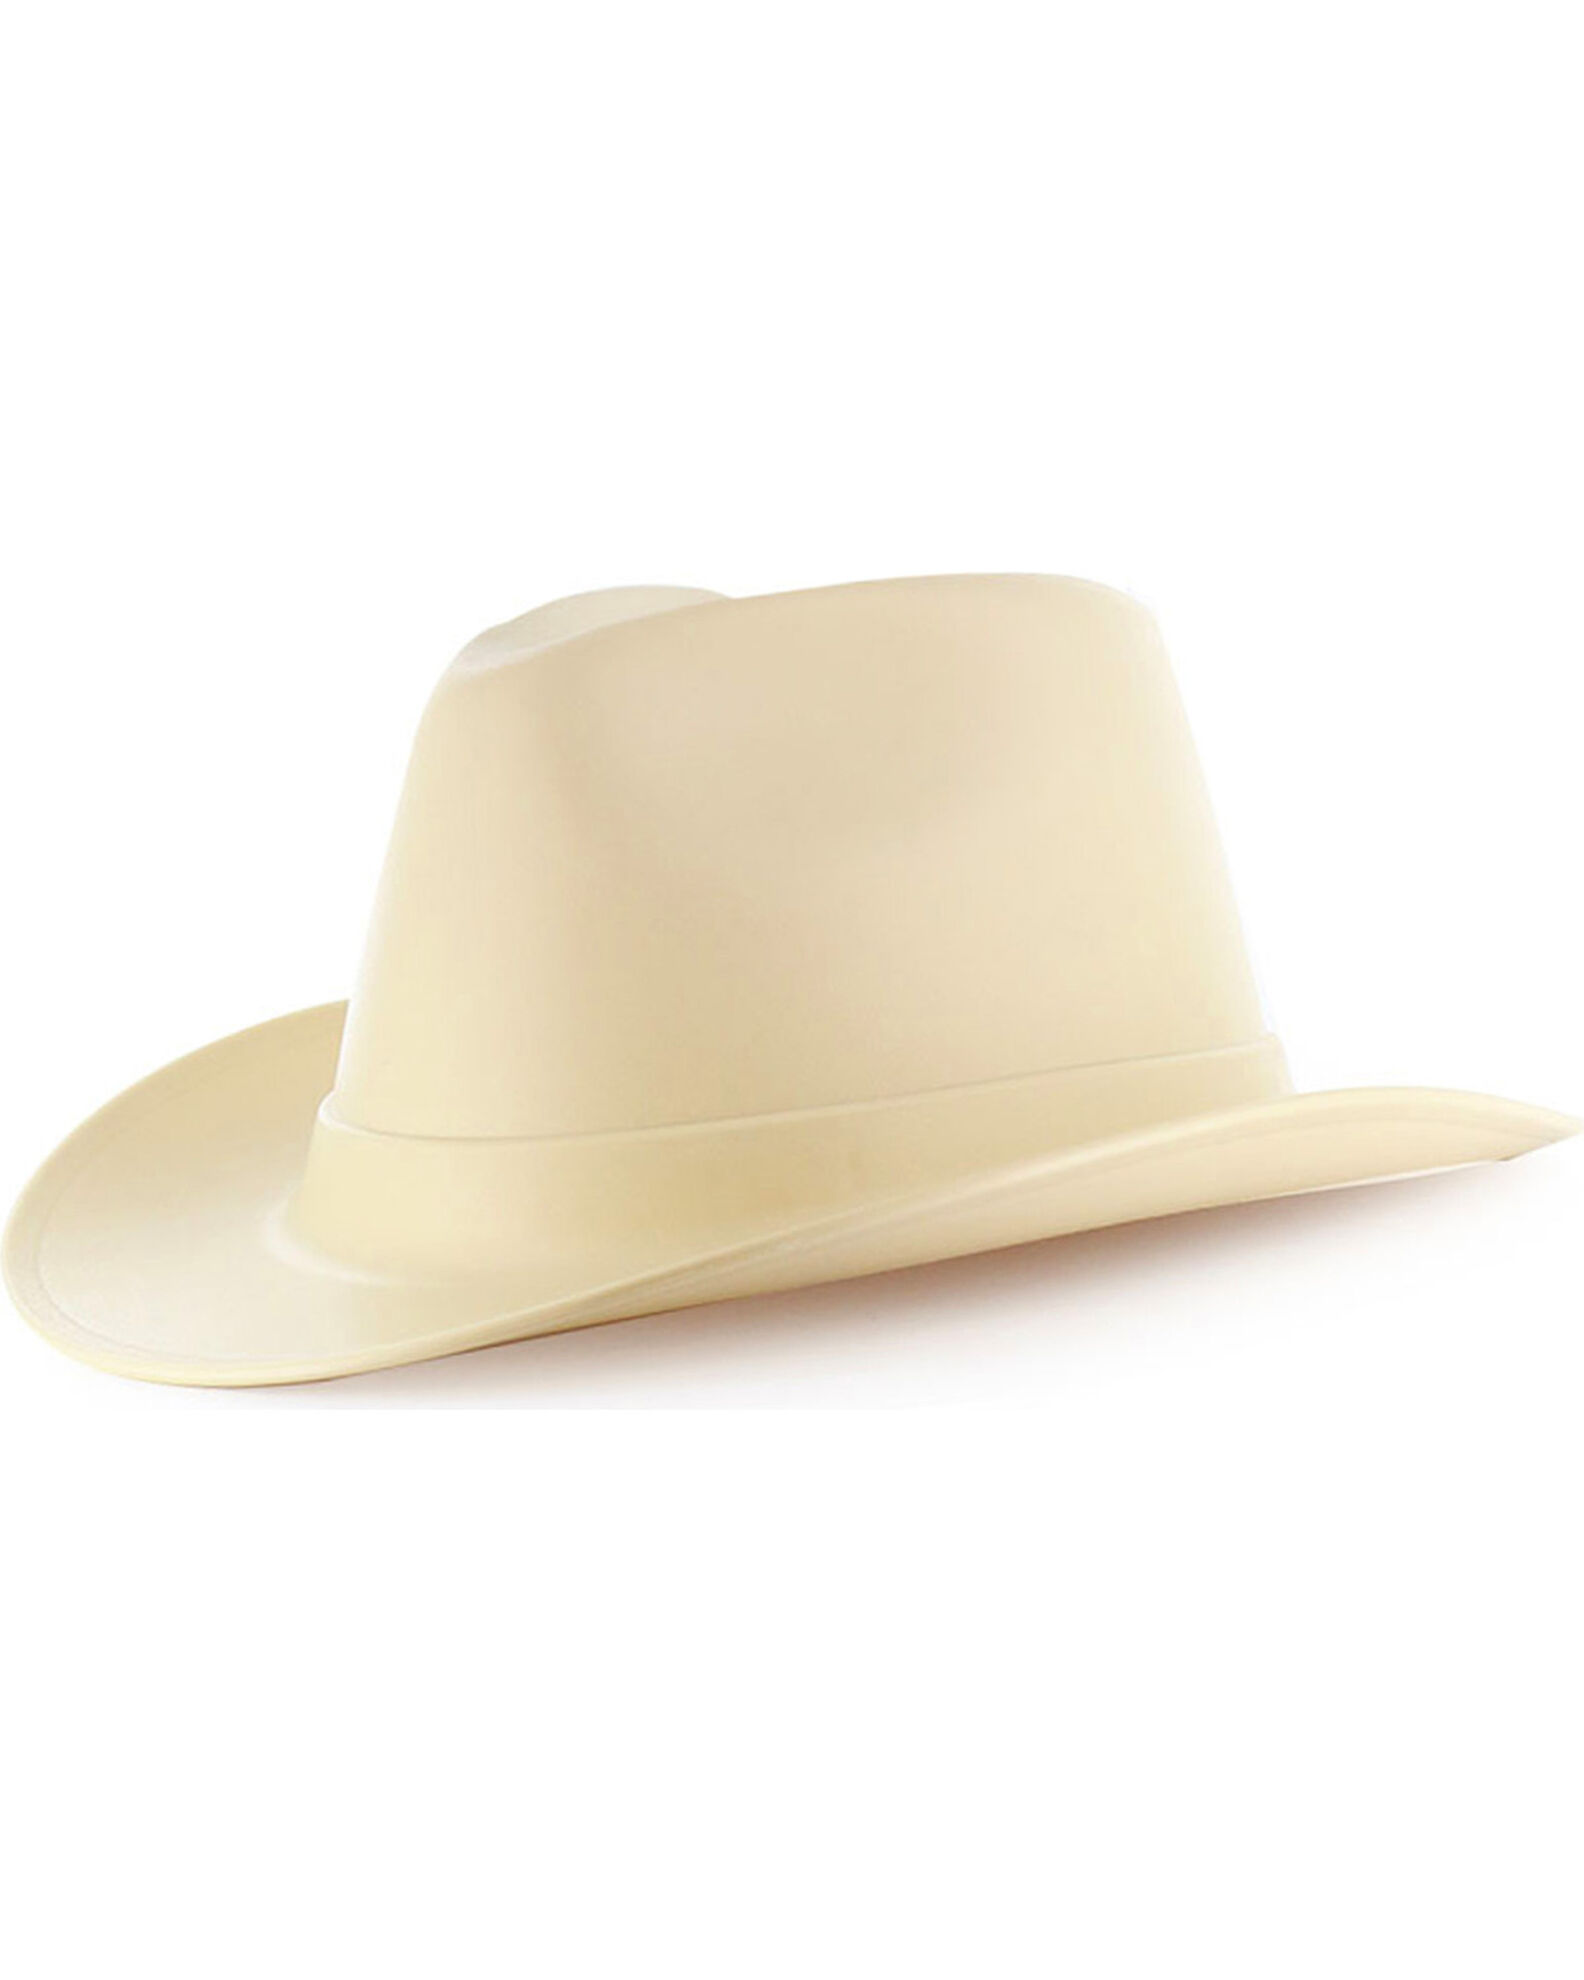 OccuNomix Men's Vulcan Cowboy Hard Hat